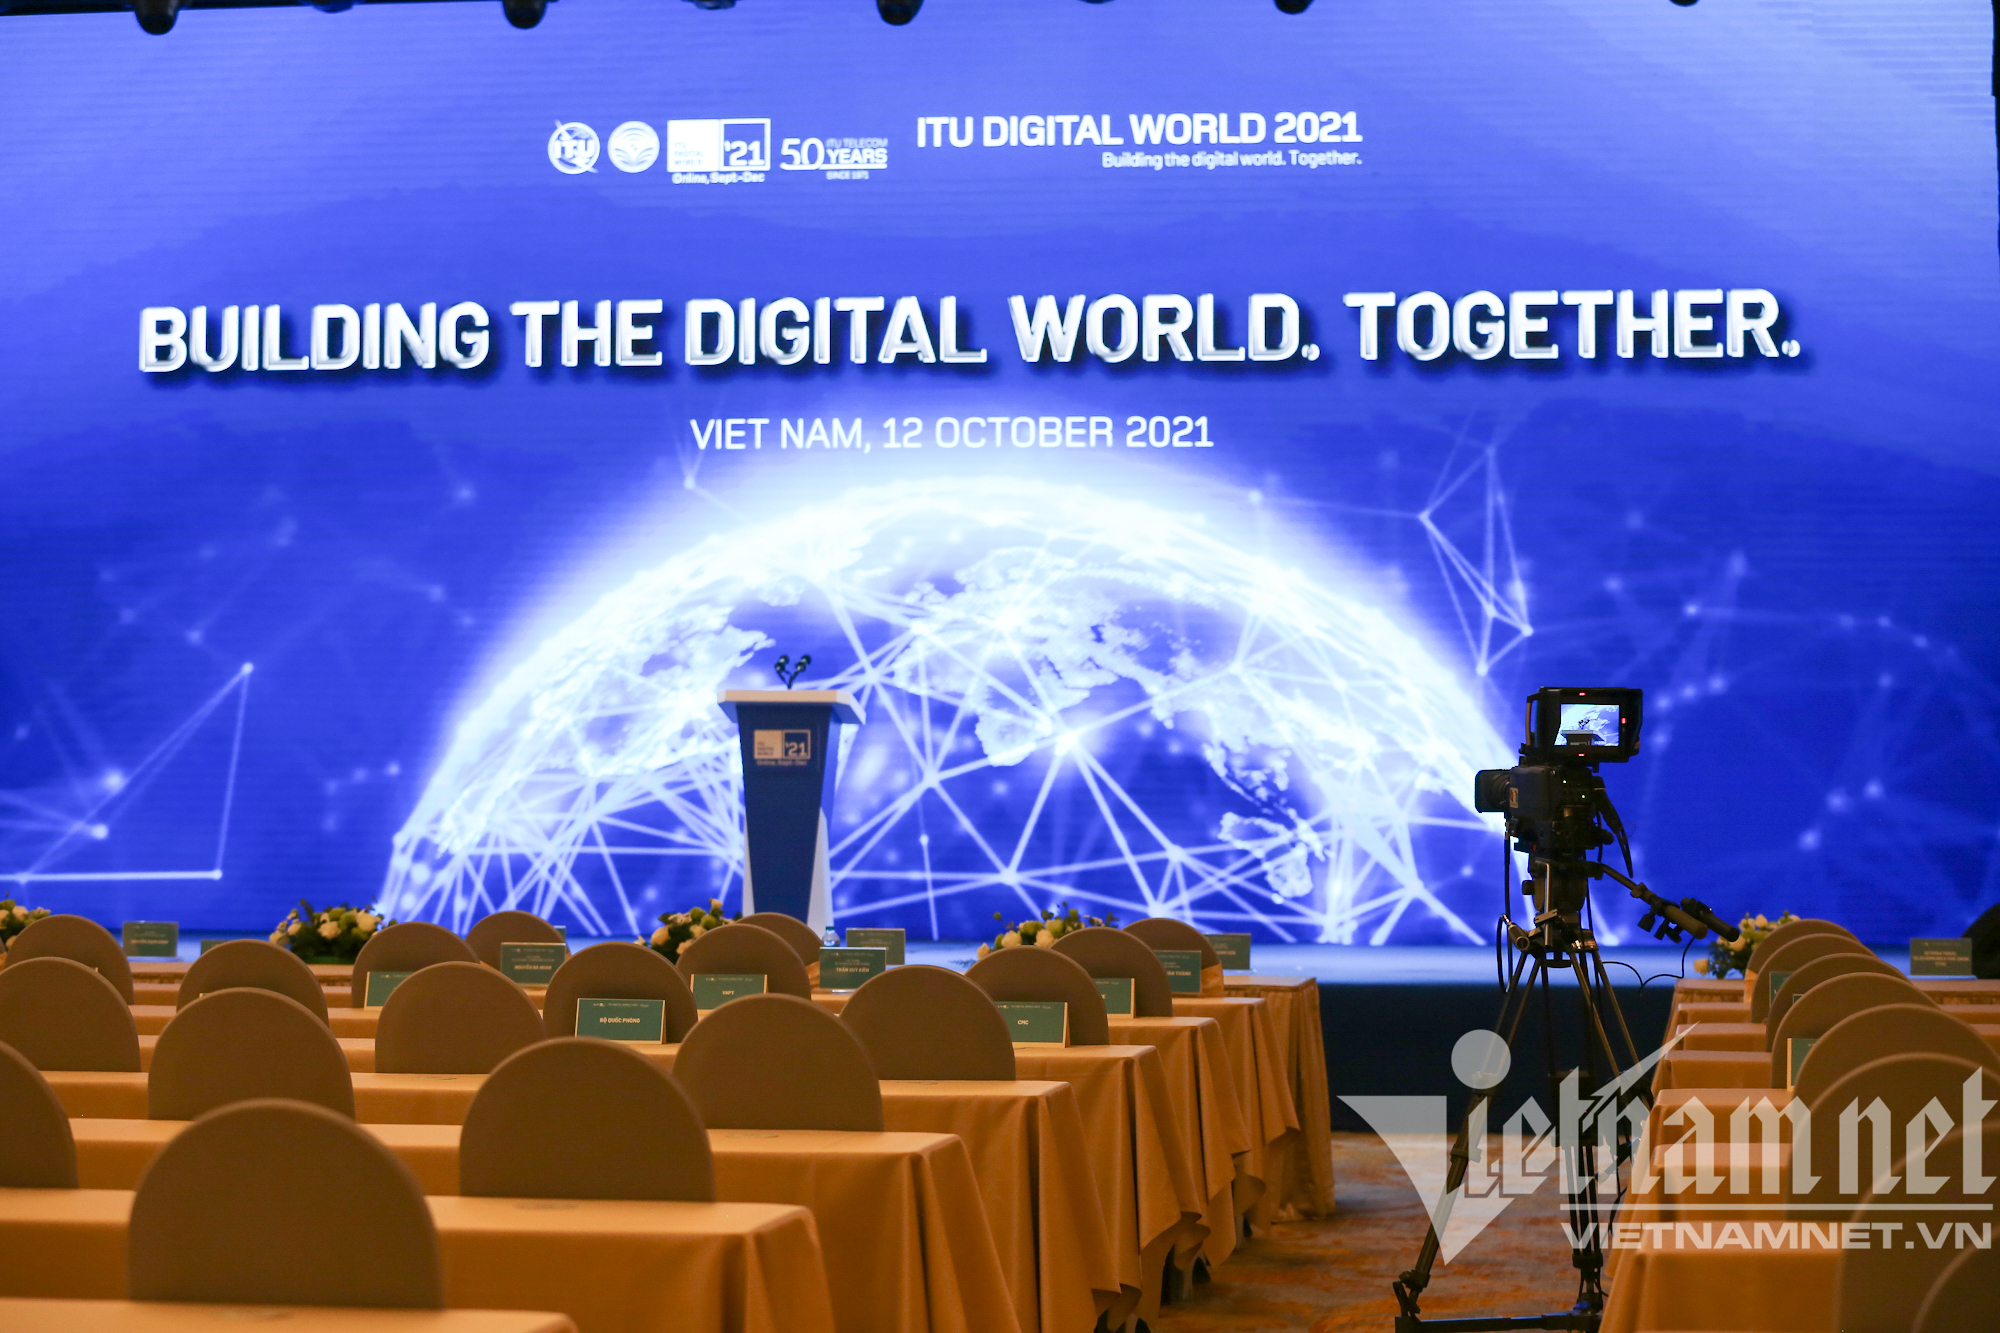 Việt Nam đã sẵn sàng cho lễ khai mạc ITU Digital World 2021